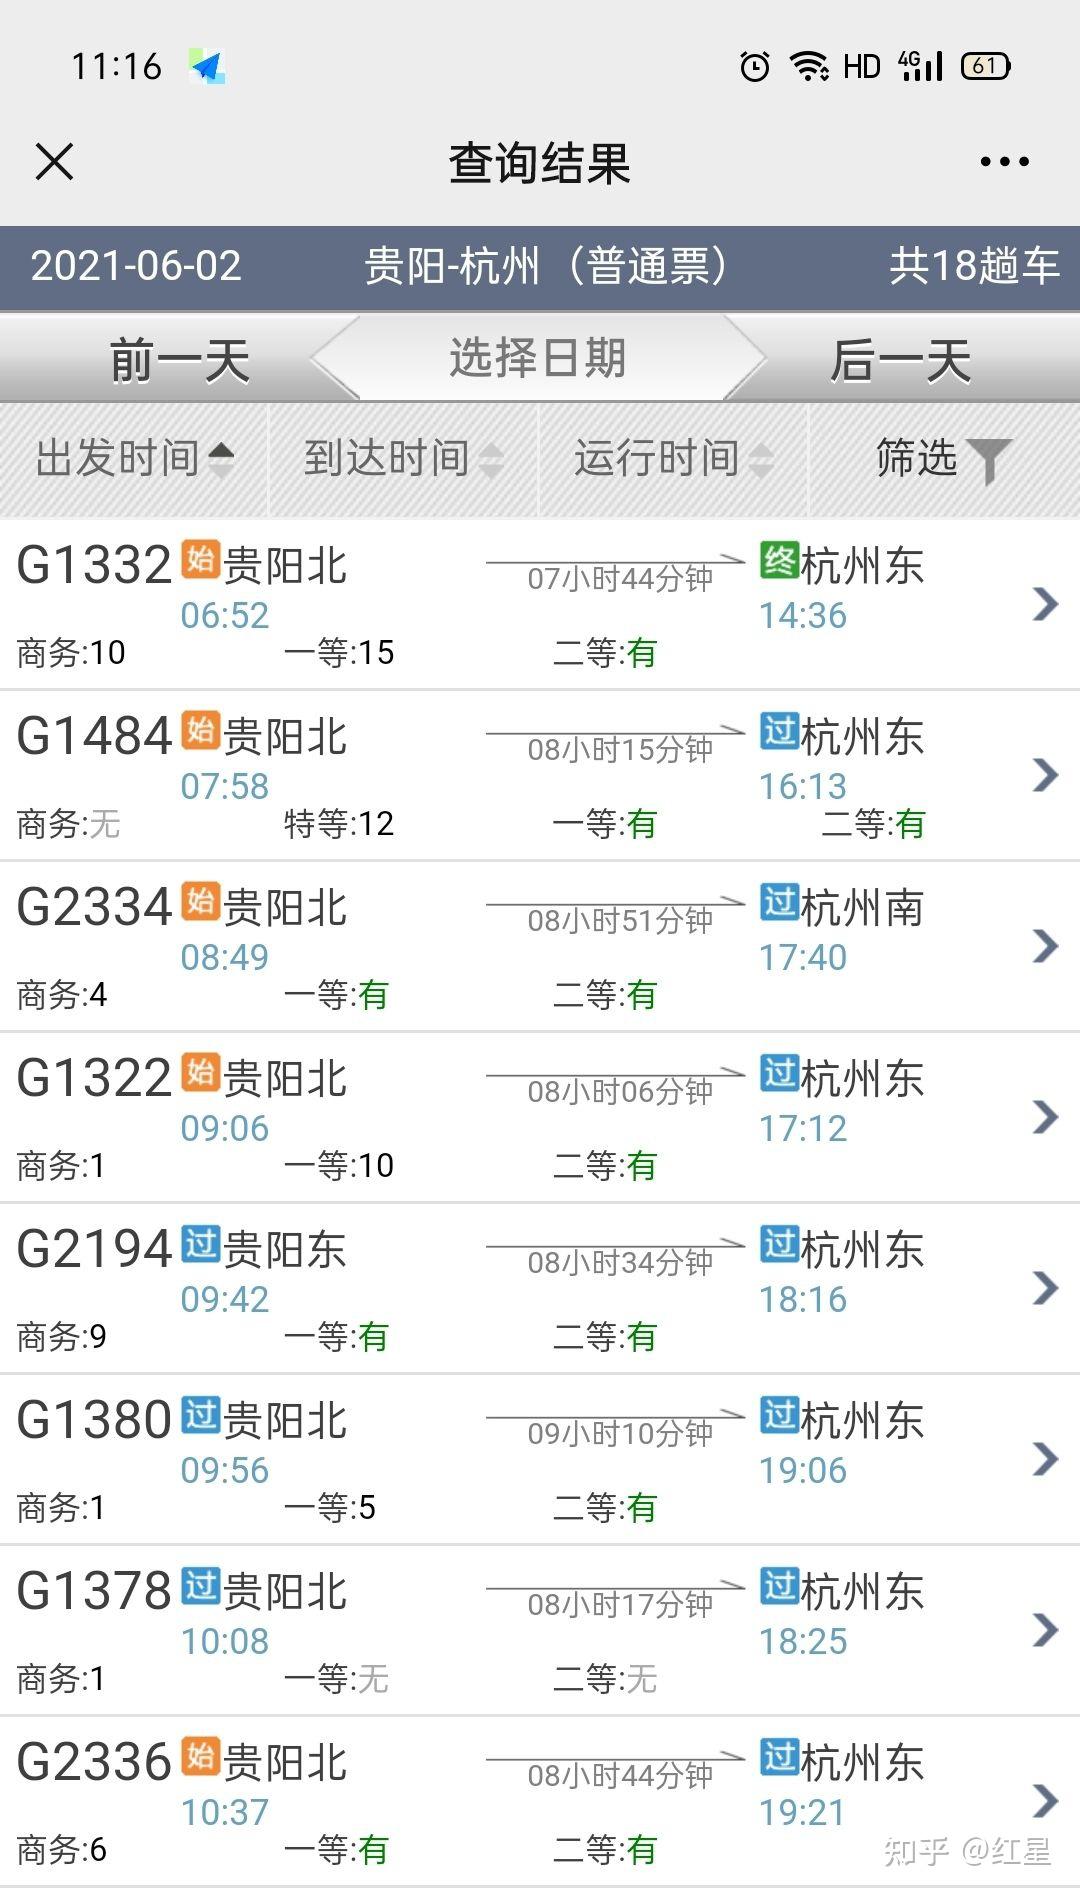 学生火车票我填的是贵阳到杭州东 请问我可以享受贵